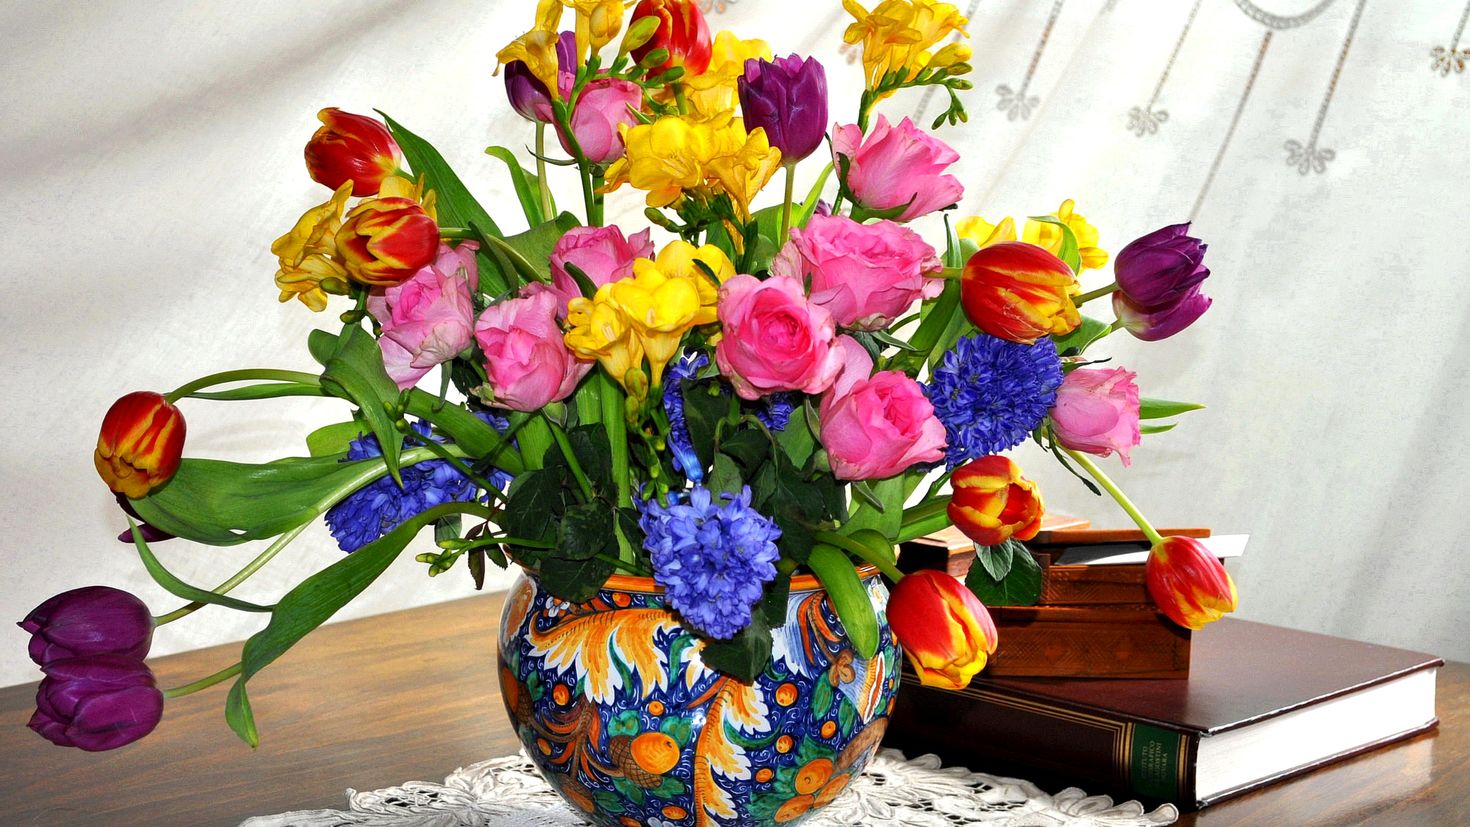 Розы и тюльпаны в одной вазе. Фрезия тюльпаны гиацинты. Весенние цветы v vaze. Весенний букет с гиацинтами и тюльпанами.